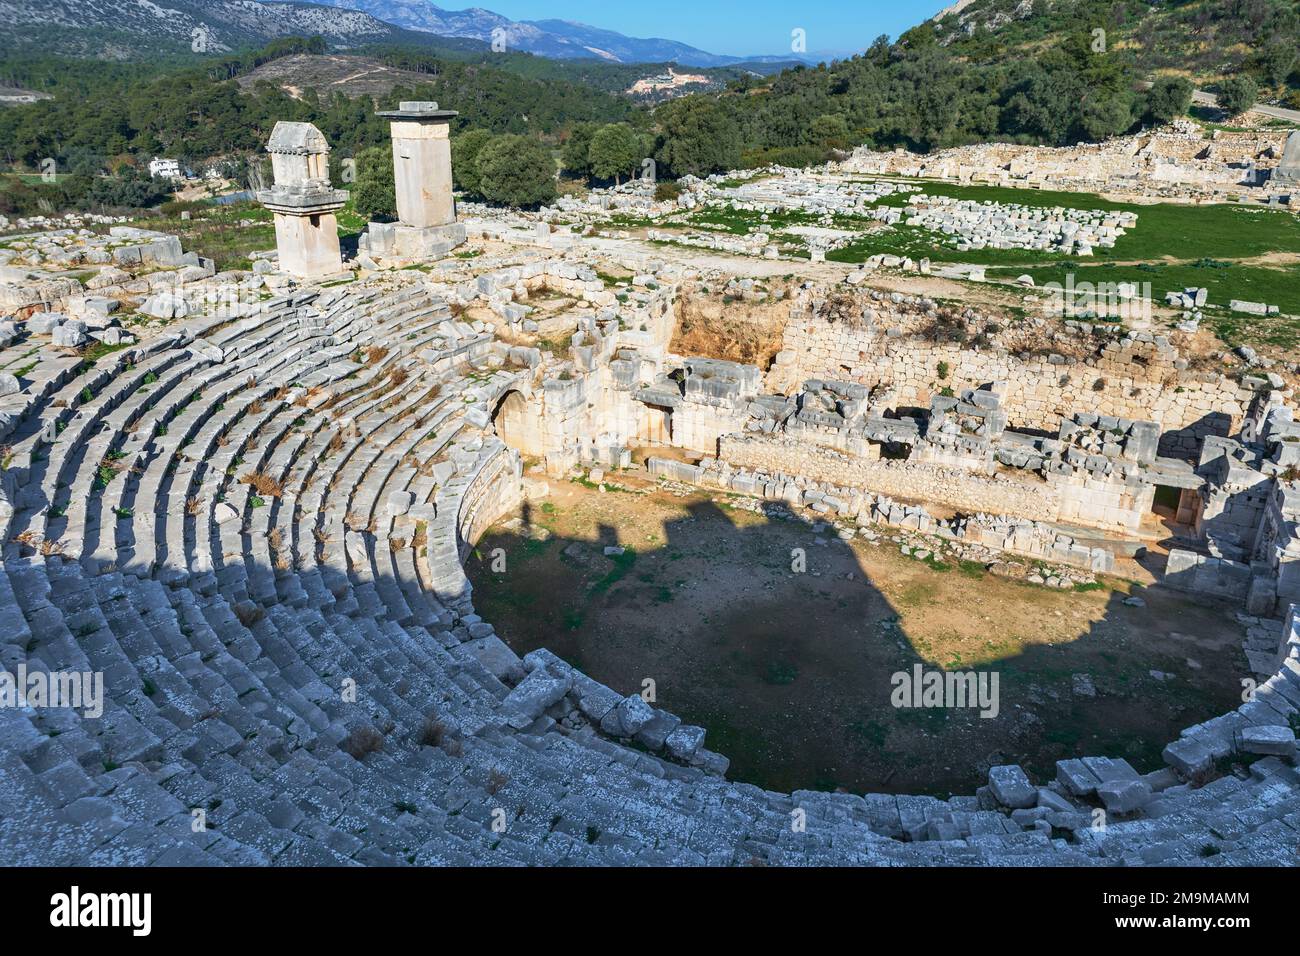 Atemberaubender Blick auf das Theater der antiken Stadt Xanthos - Teil der Lykischen Art. Grabdenkmal von König Kybernis (Harfengrab), Säulengrab im Hintergrund. Stockfoto